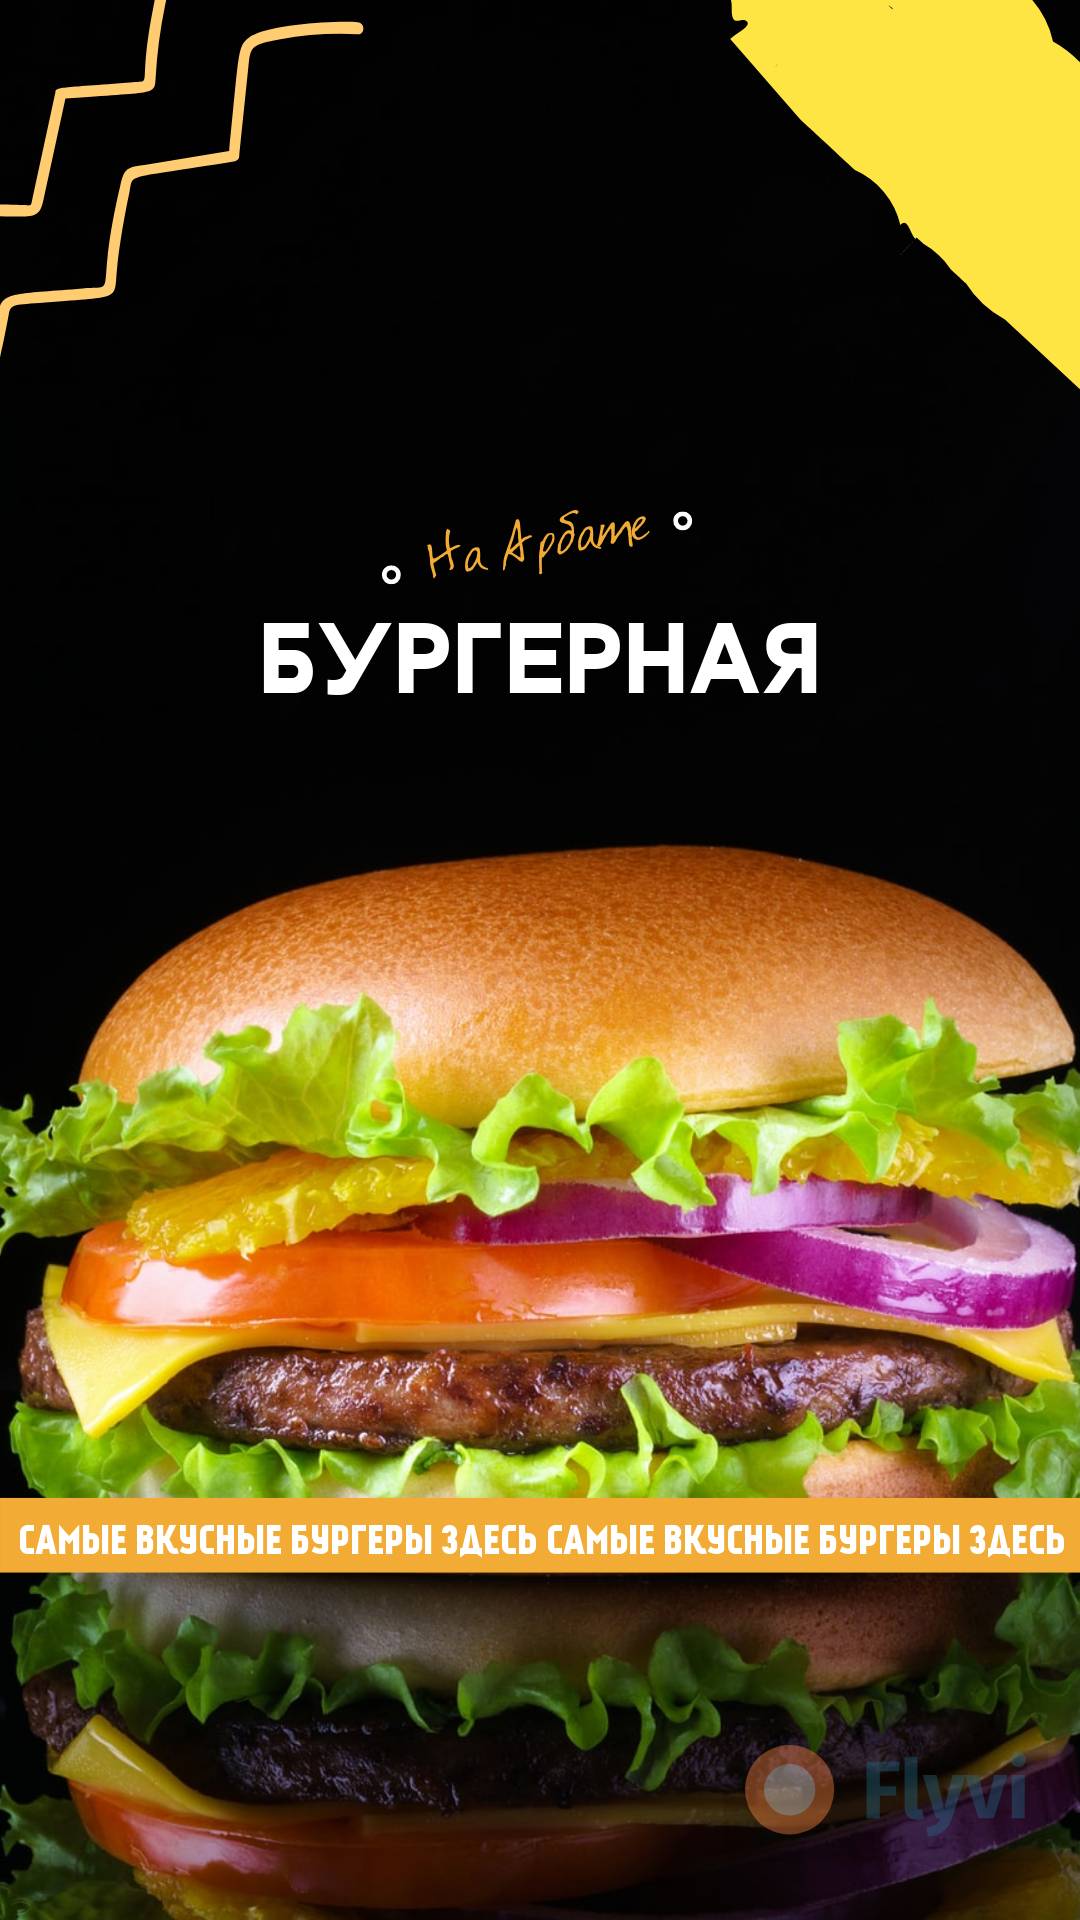 Гамбургер с говядиной и свежими овощами крупными планом на черном фоне для рекламы бургерной